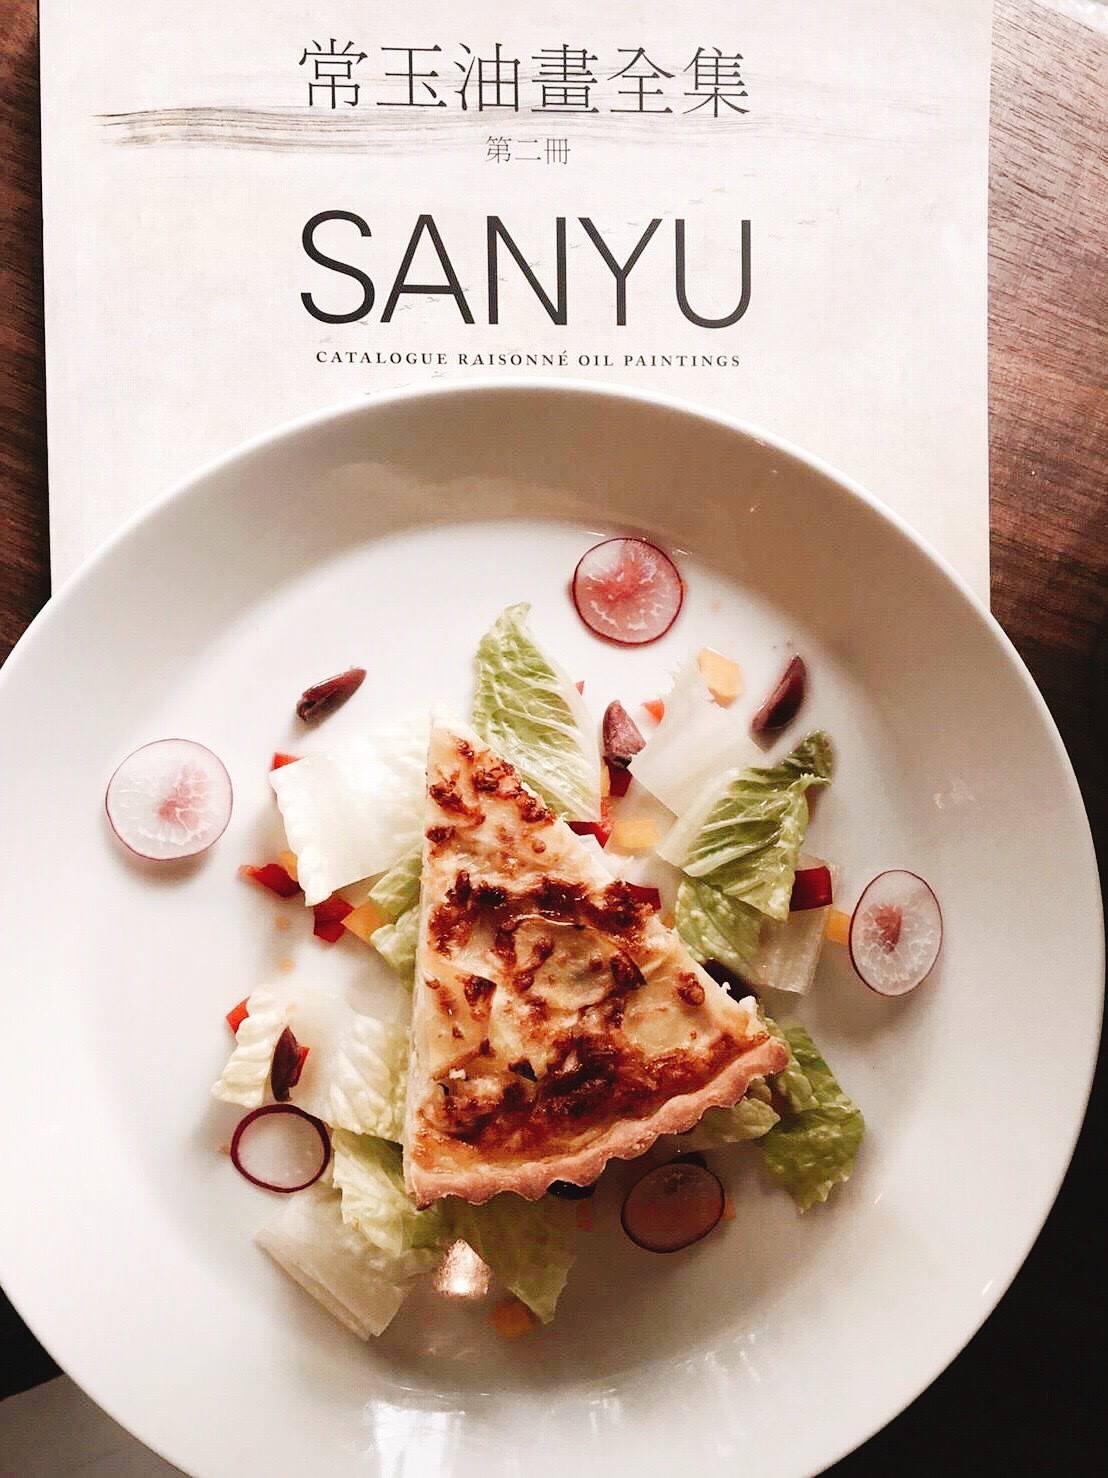 （圖一）主餐「經典手工法式鹹派」以傳統法式工法製作餐點。（圖片提供／常寓 Maison de Sanyu）